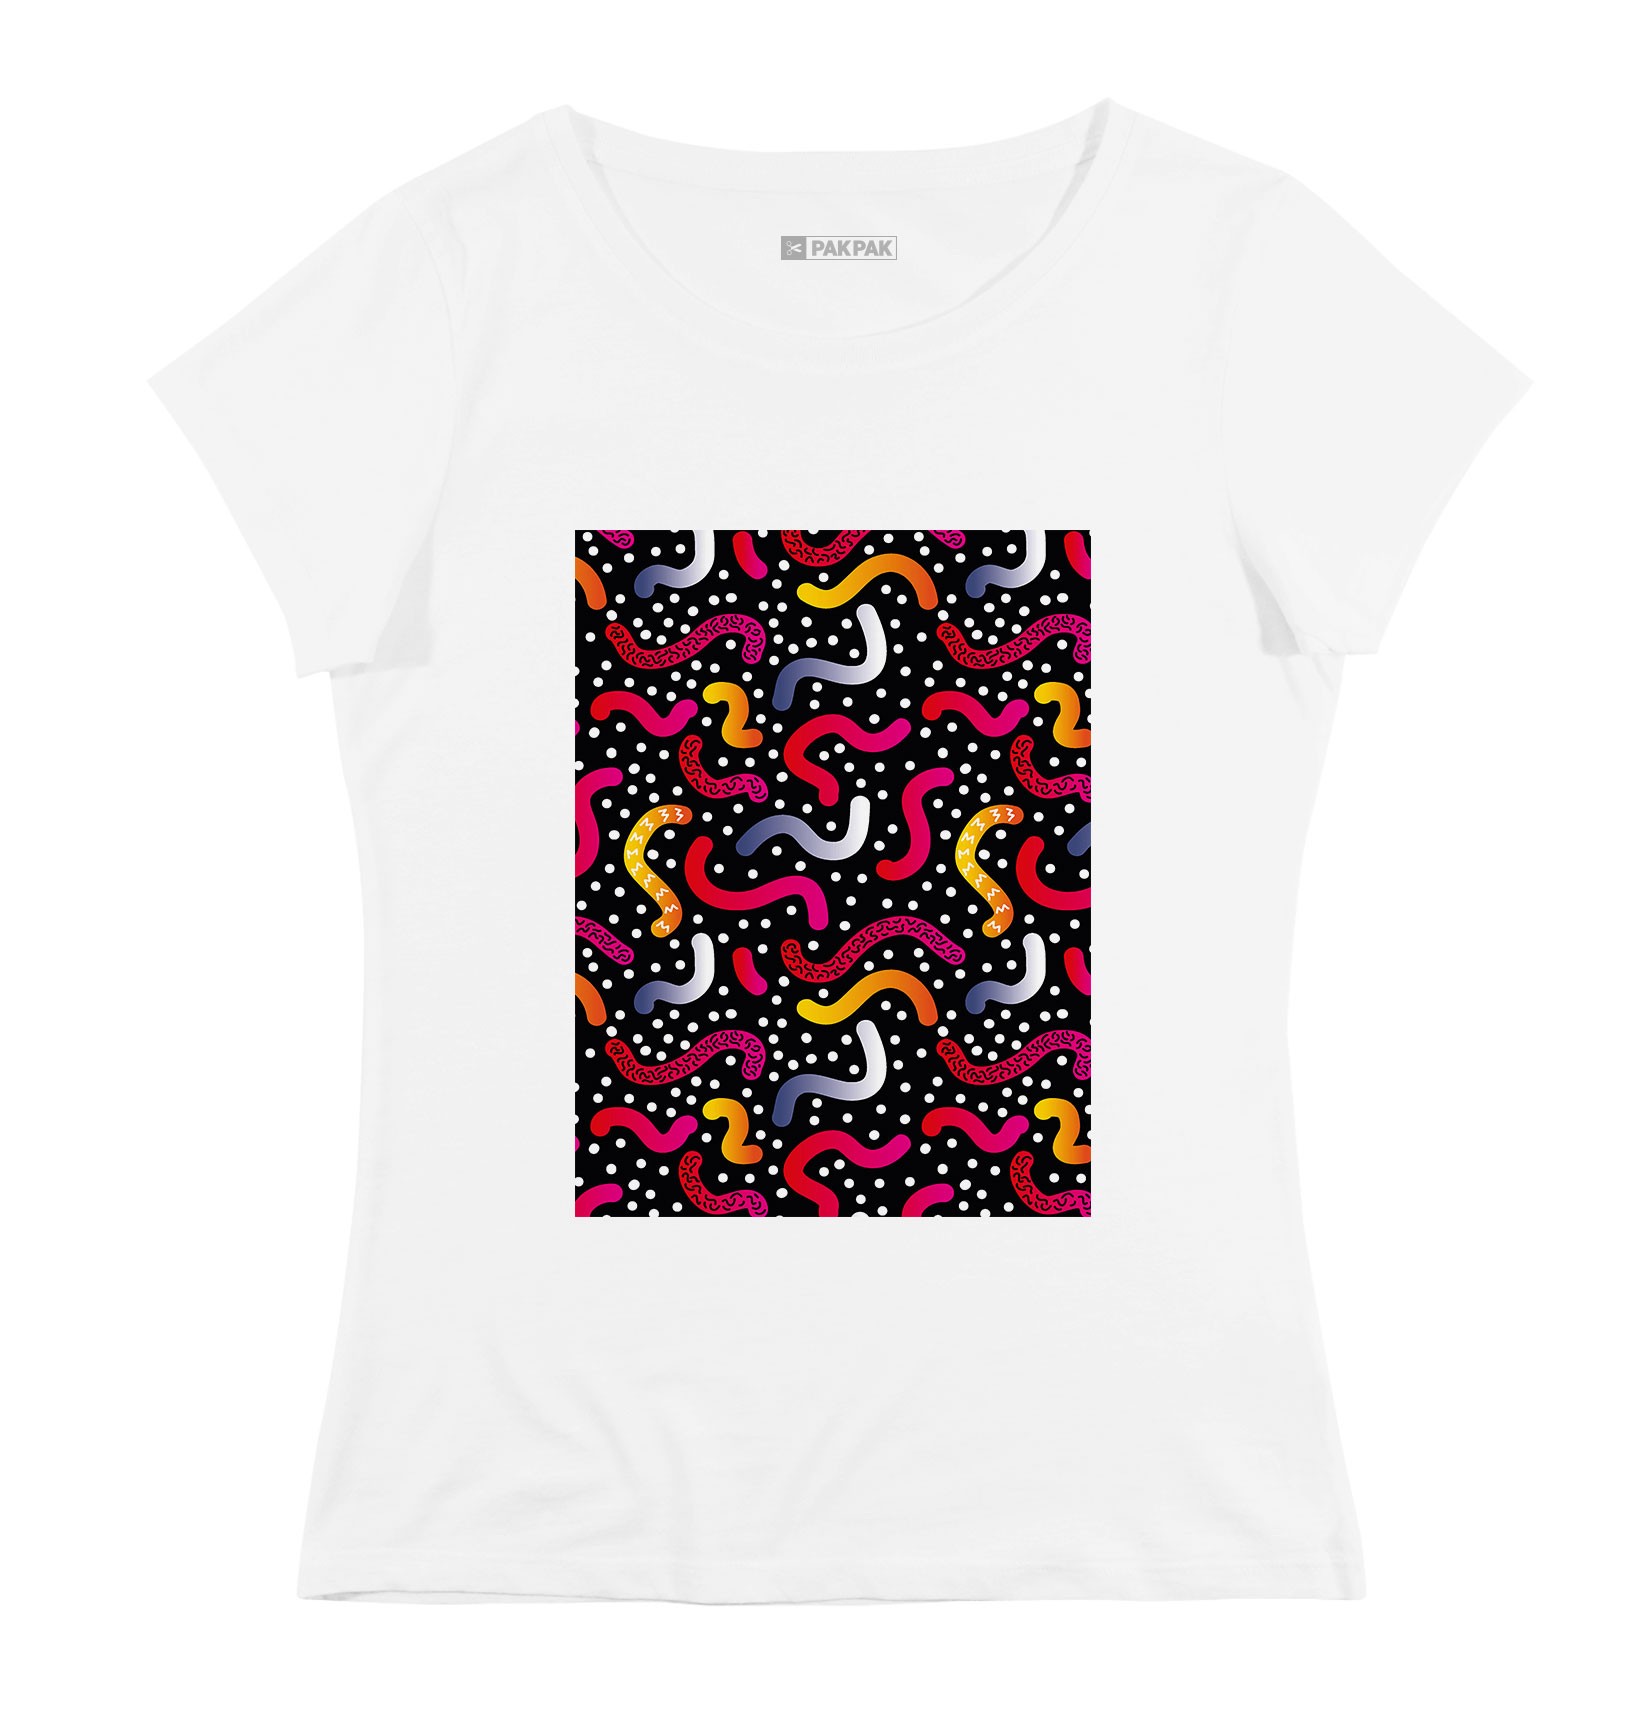 T-shirt Femme avec un Femme Motifs Serpentin Grafitee